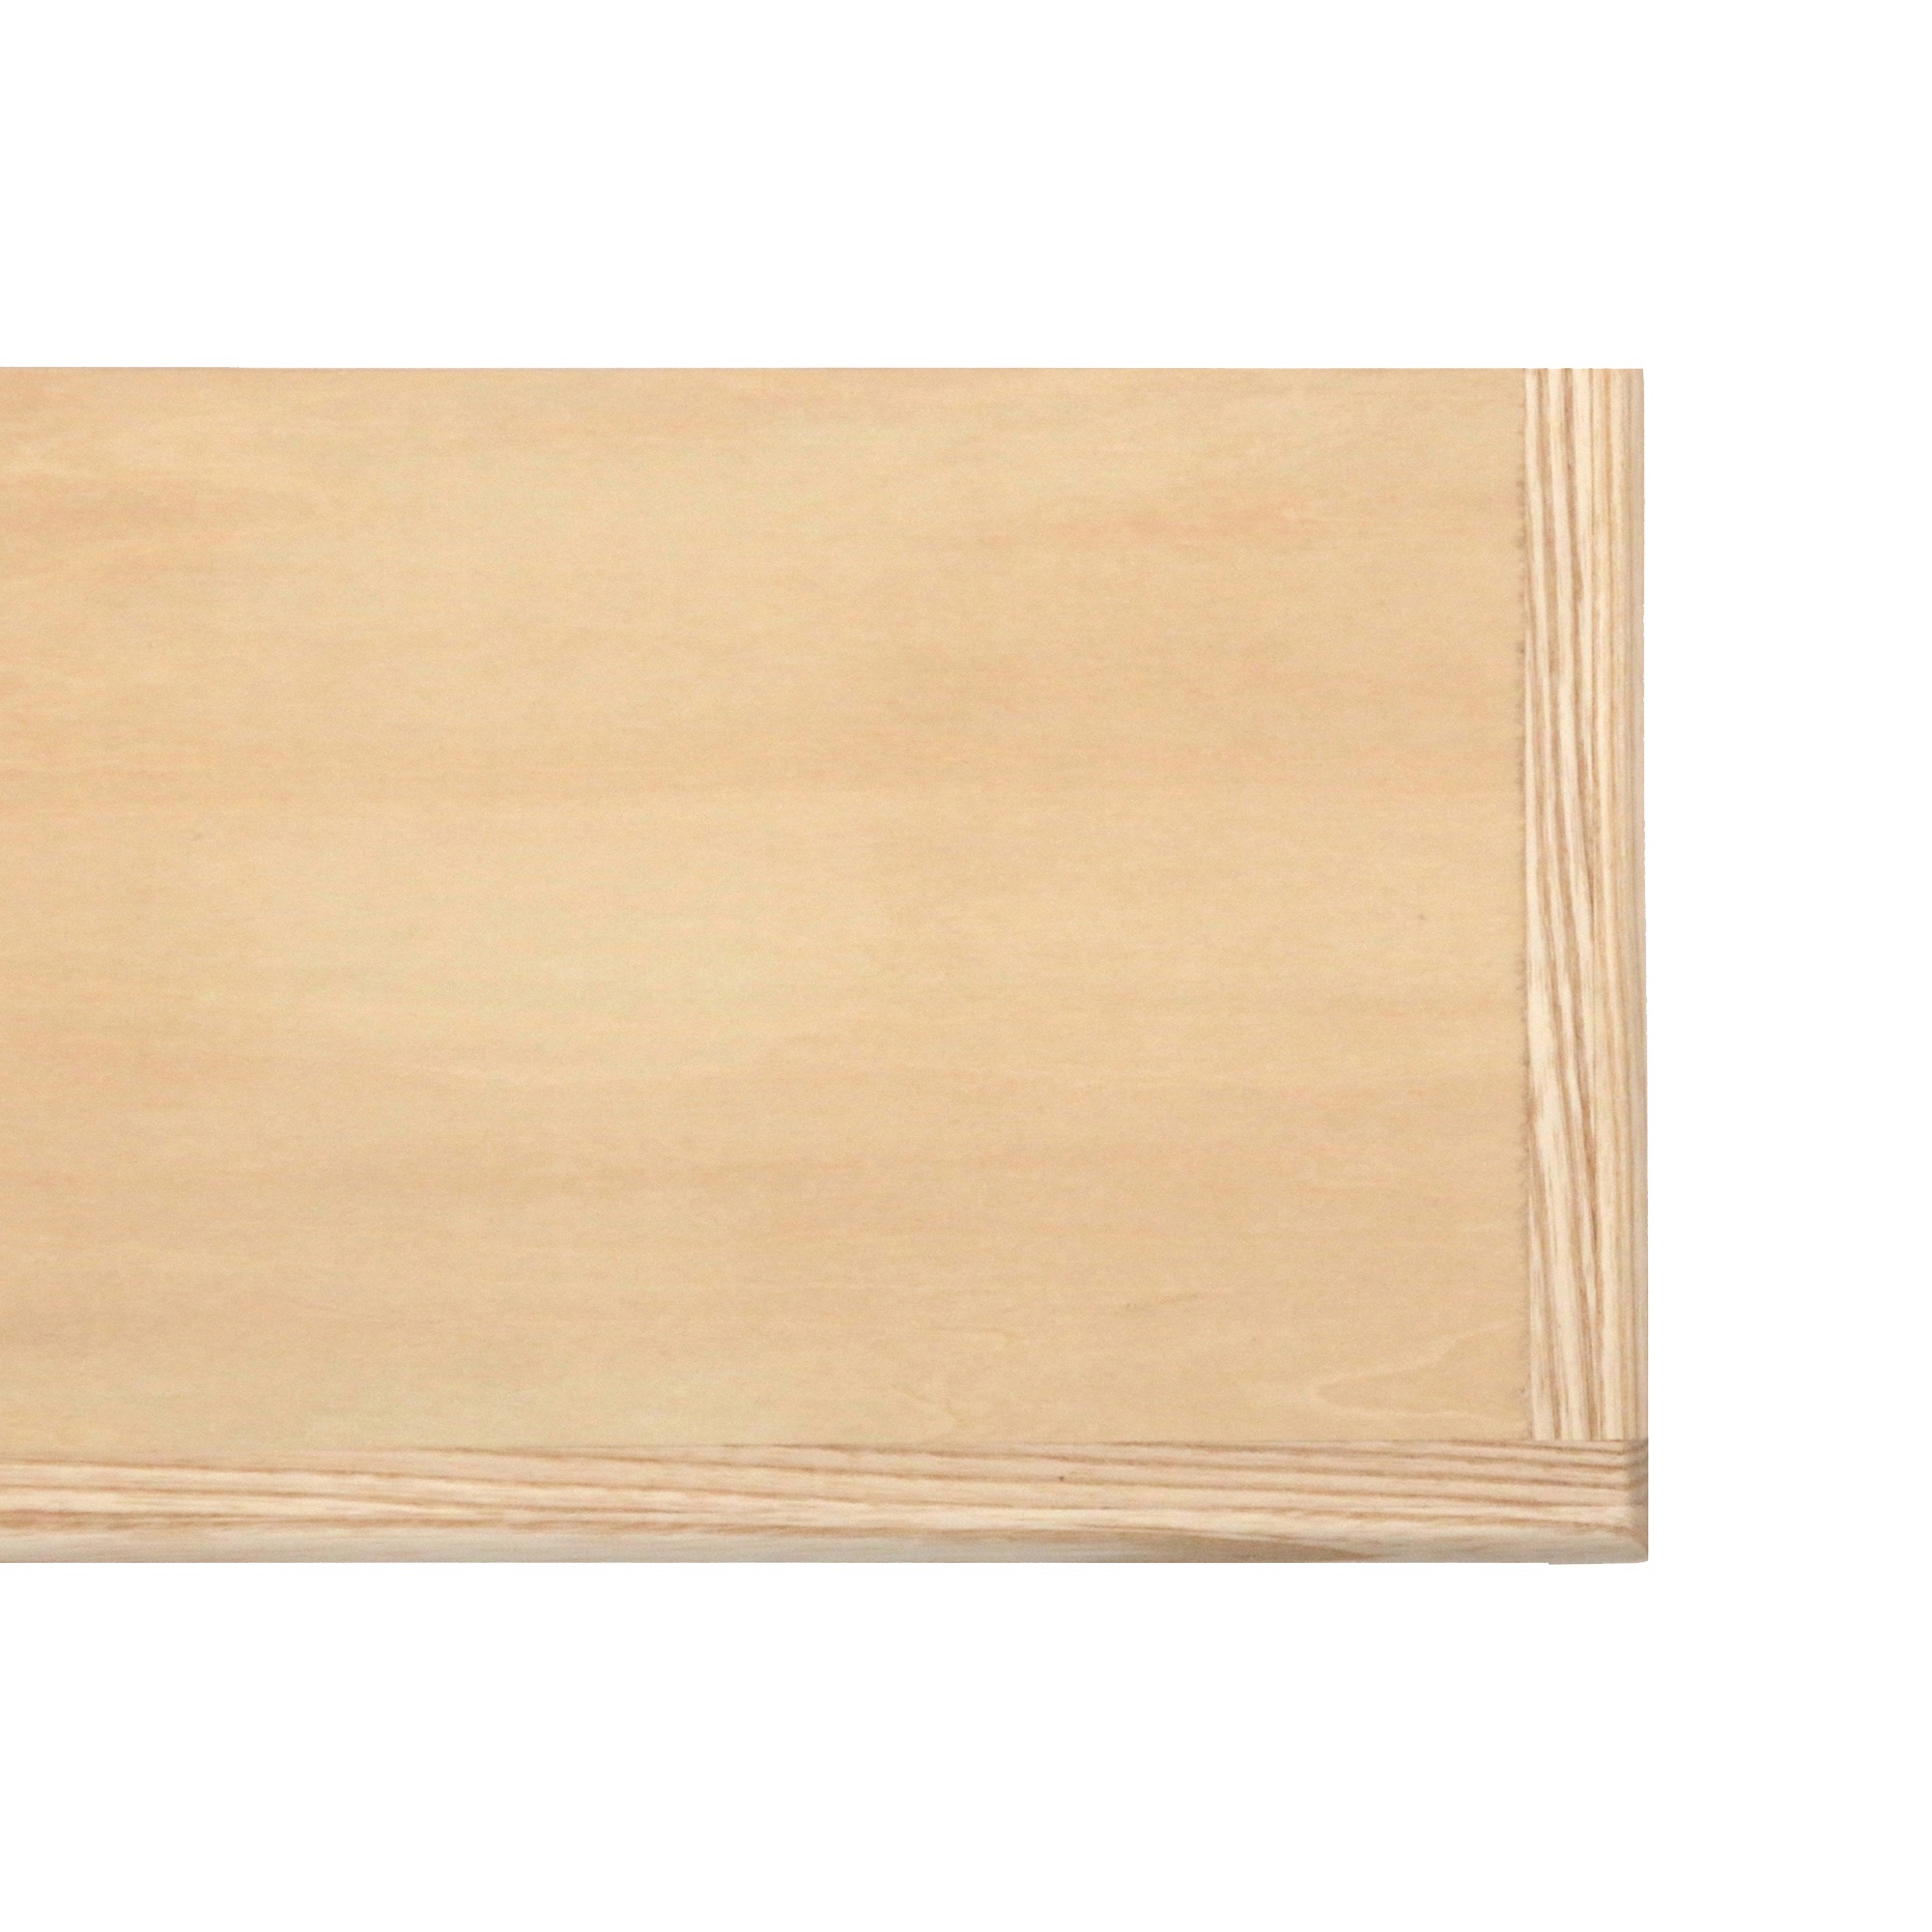 角丸棚板 アッシュ×シナ D185 PS-CP002-04-G015 3方の木口にシナを貼り合わせた棚板です